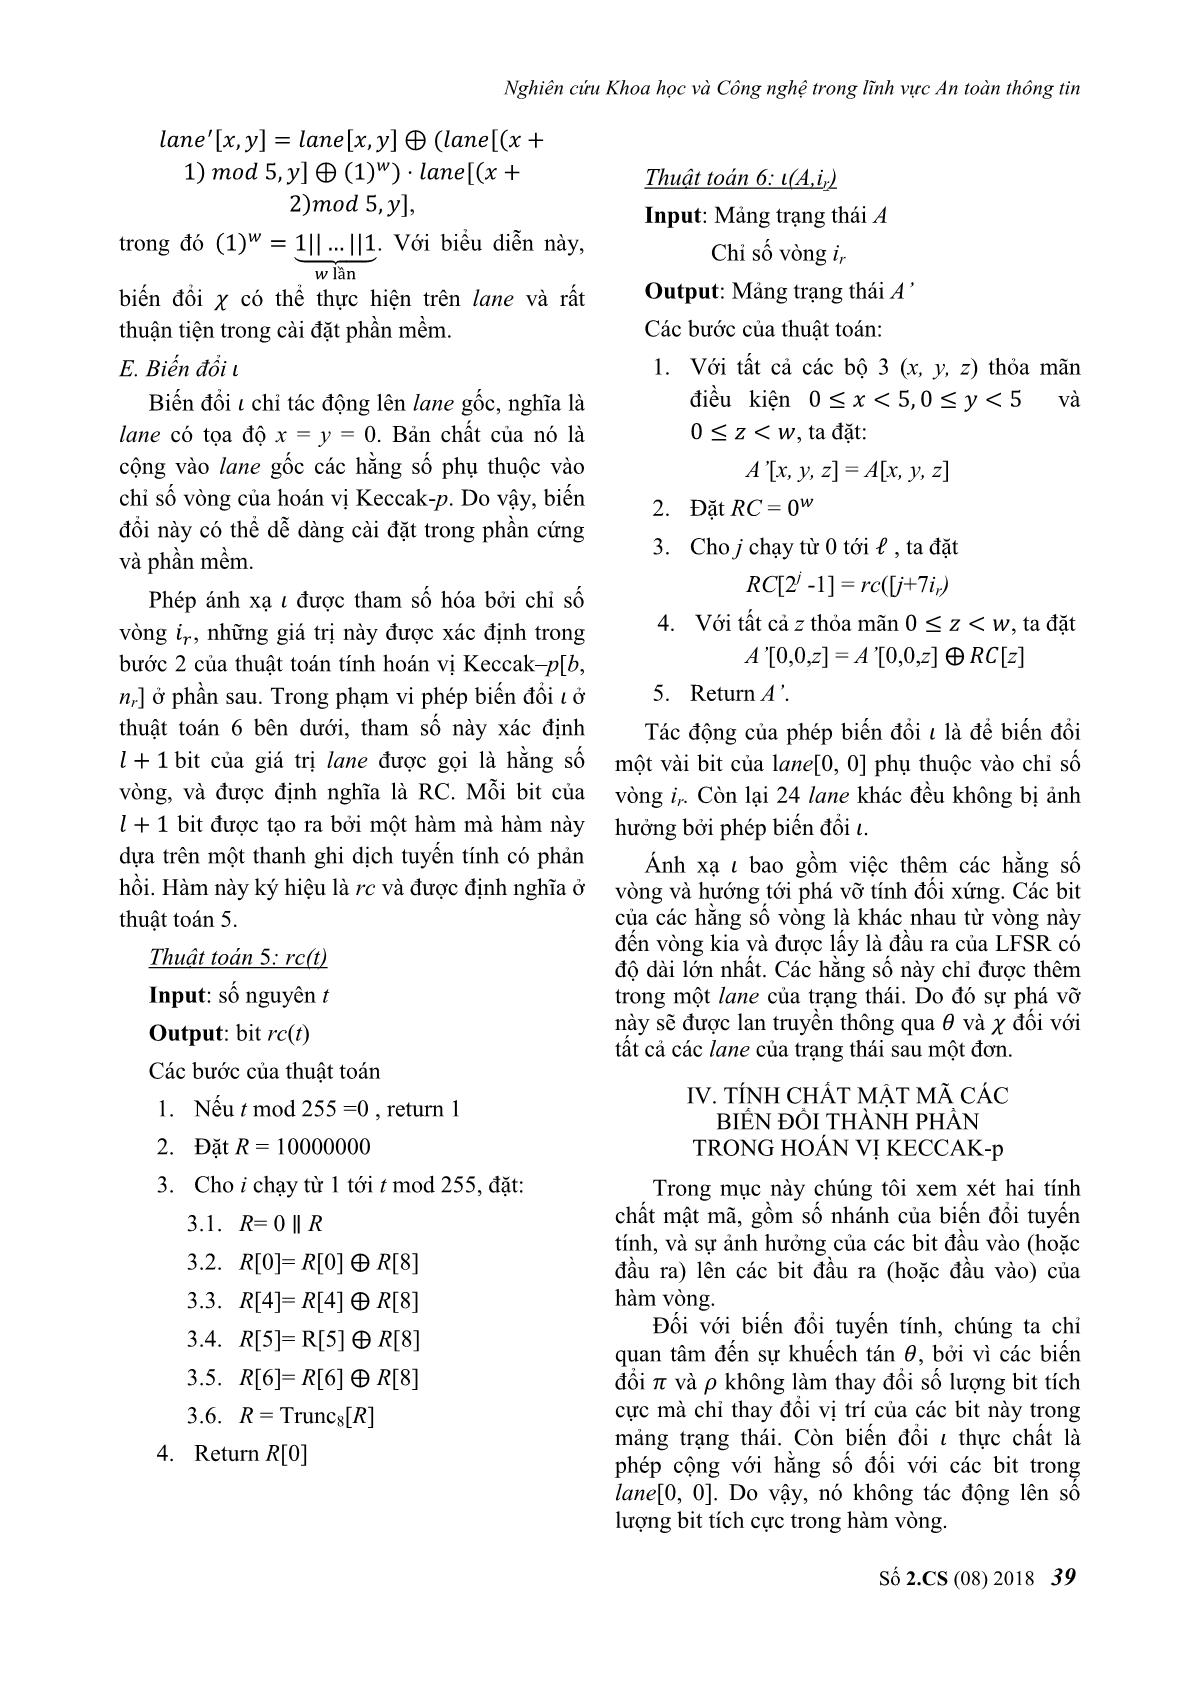 Phân tích các thành phần mật mã trong hoán vị Keccak - P trang 6